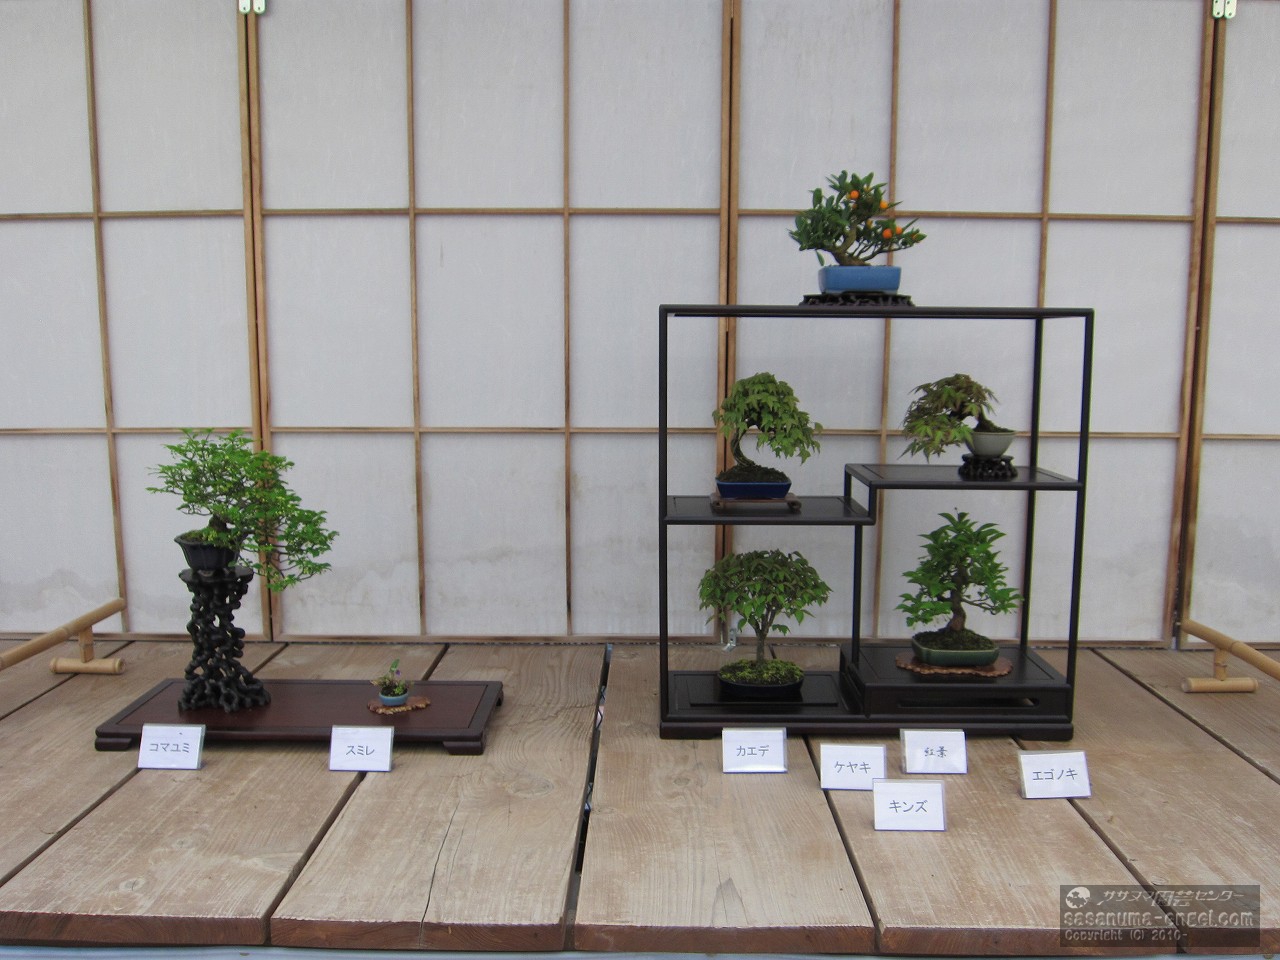 コマユミ、スミレ、（上から）キンズ、楓、紅葉、ケヤキ、エゴノキ（写真は平成２９年のものです。）